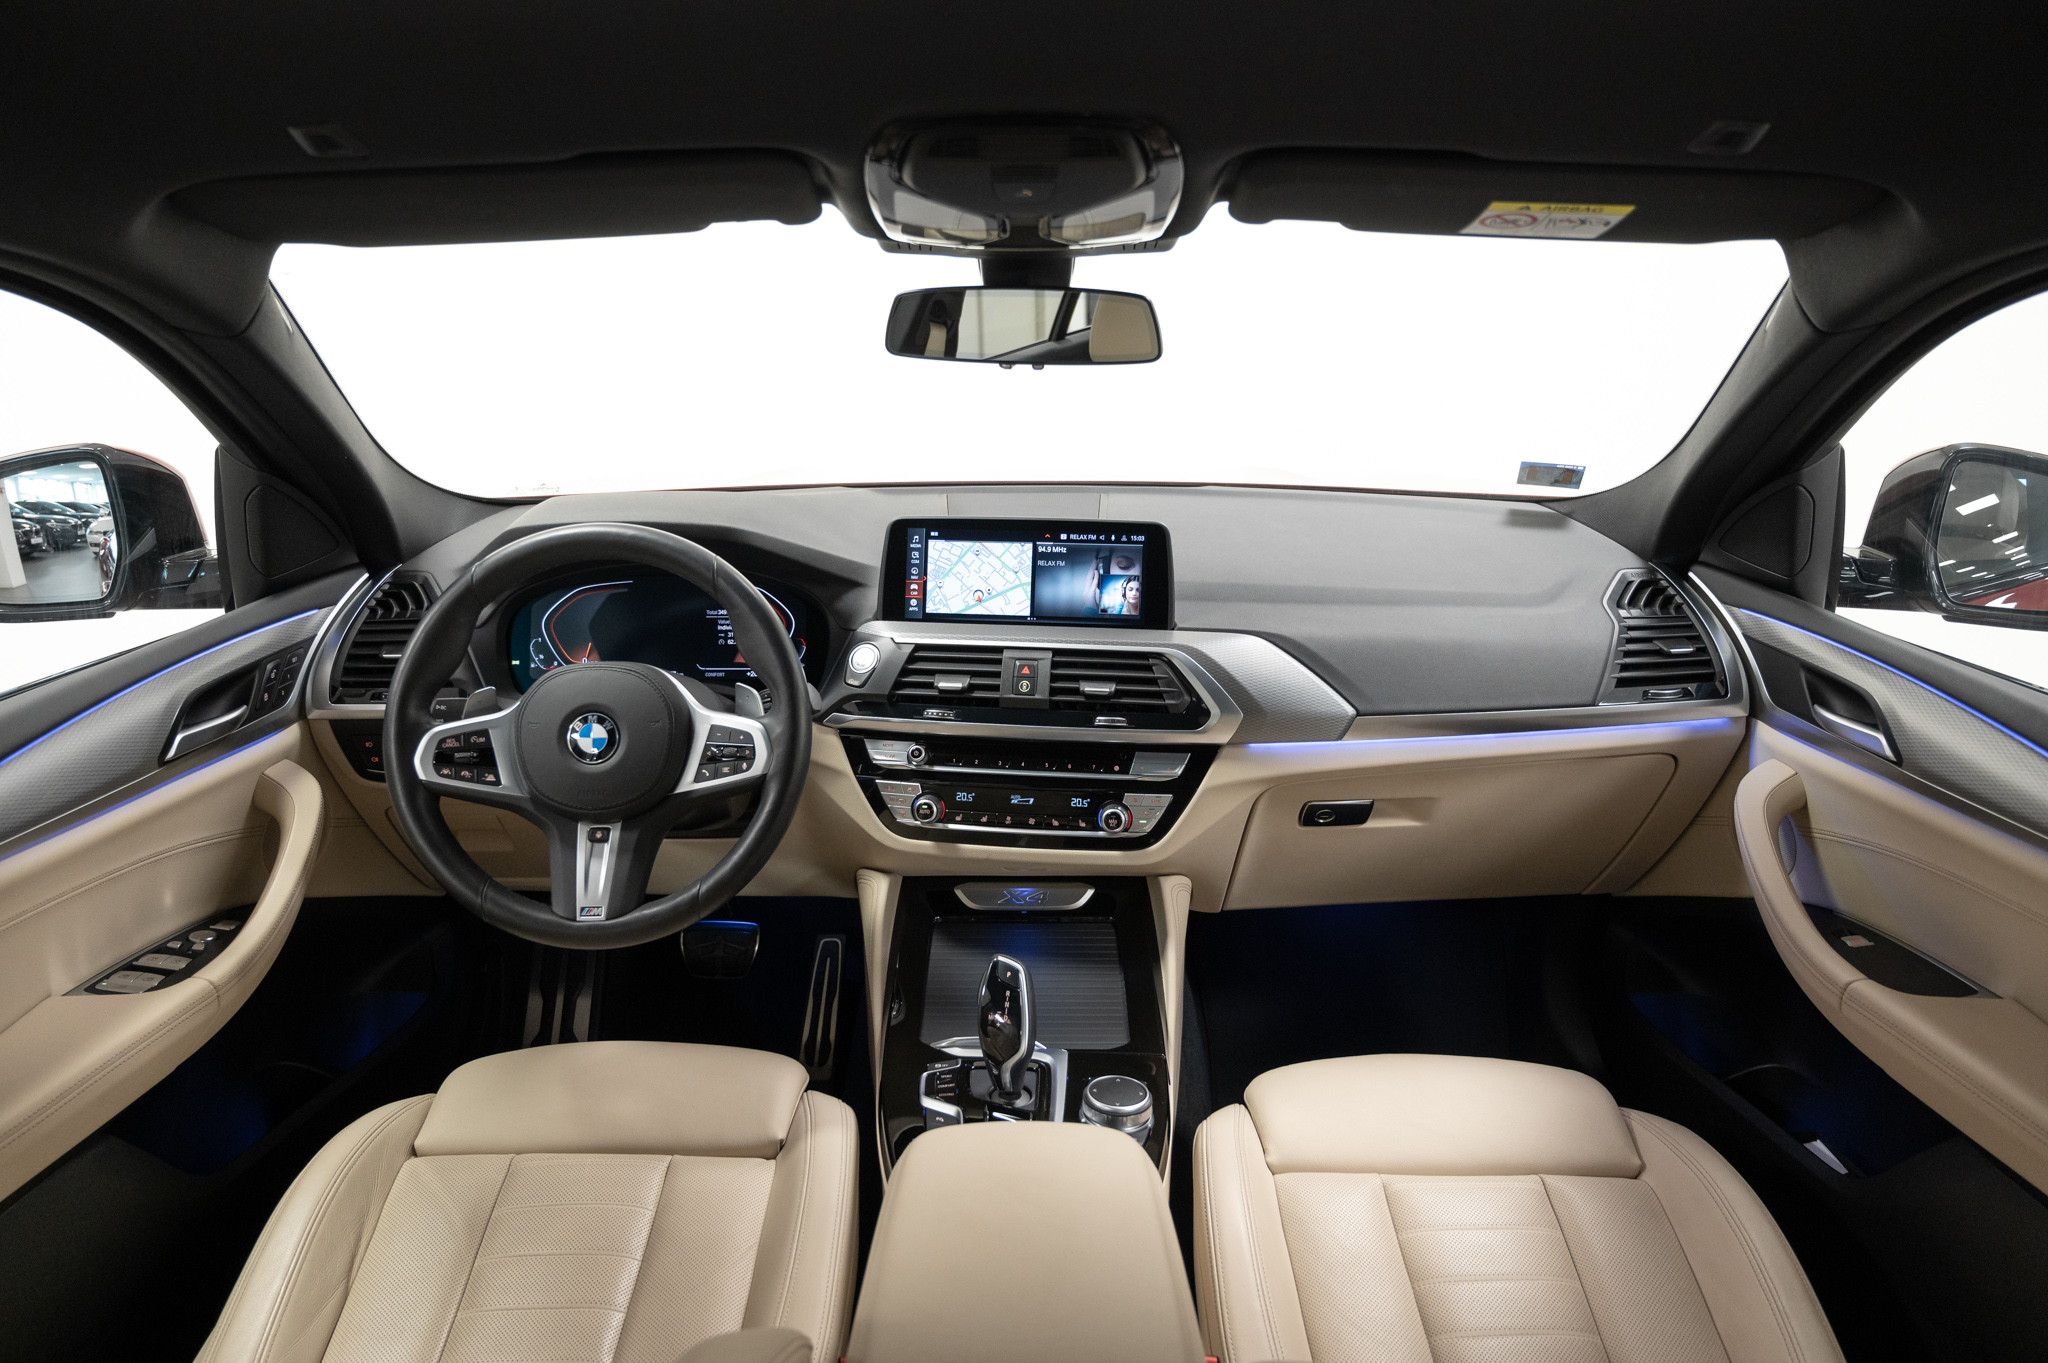 BMW X4 2020